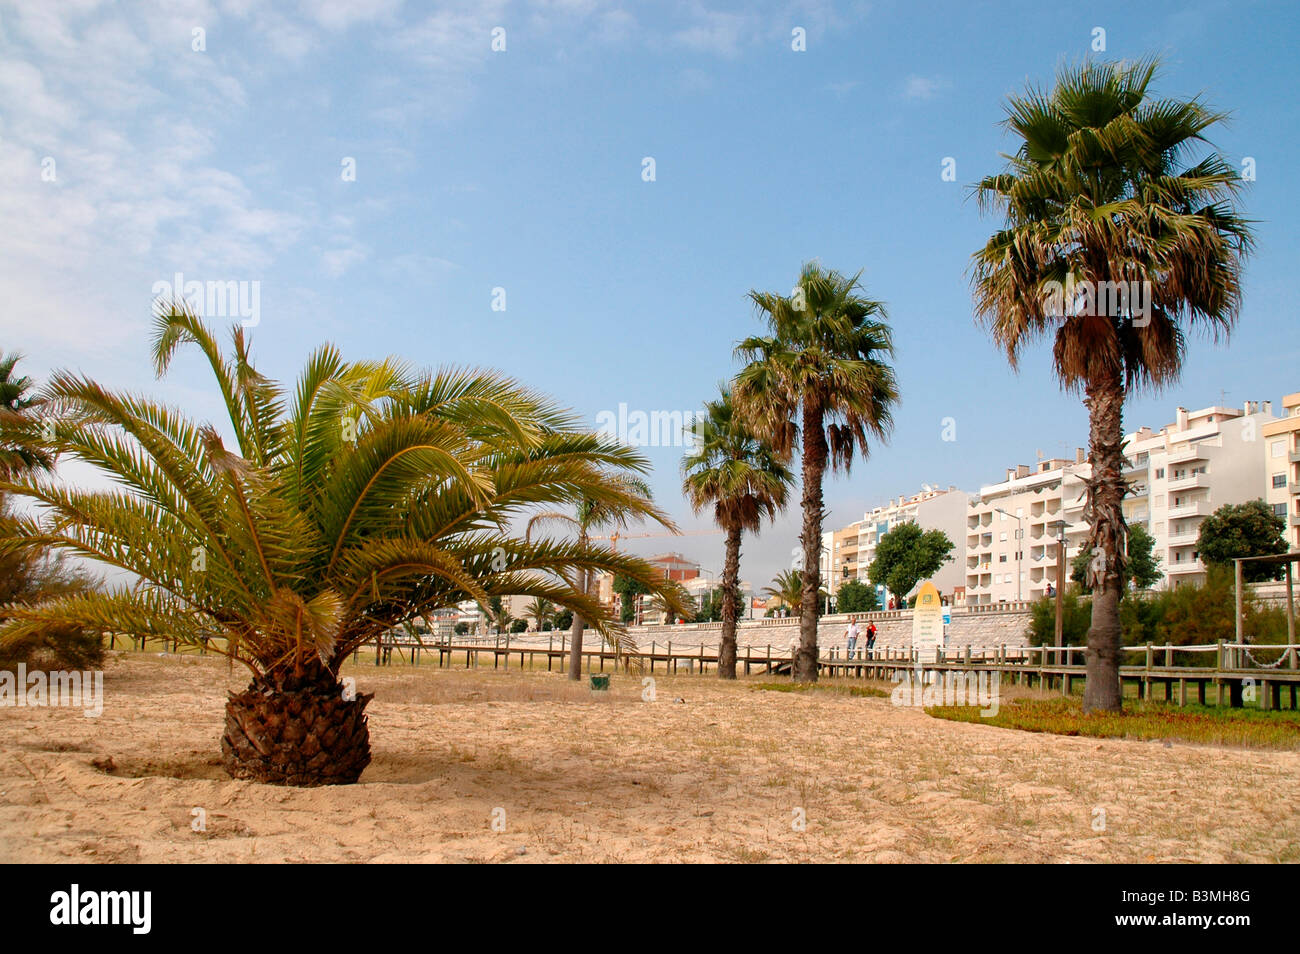 Il lungomare della città di Figueira da Foz,Portogallo, incorniciato da palme in spiaggia di sabbia Foto Stock